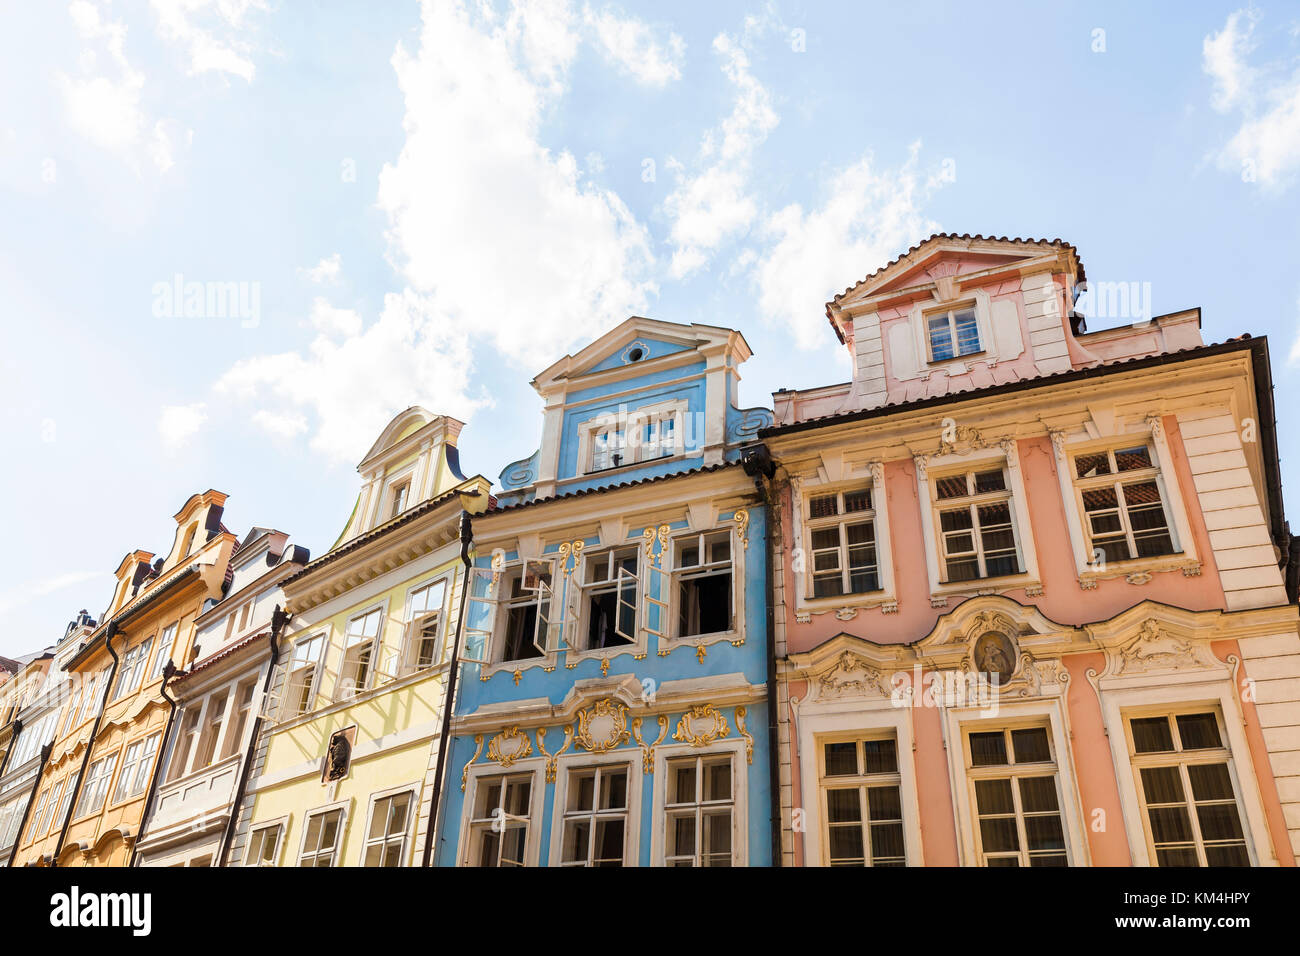 Tschechien, Prag, Kleinseite, Mostecká-Strasse, Brückenstrasse, typische Häuser, Hausfassaden Stock Photo